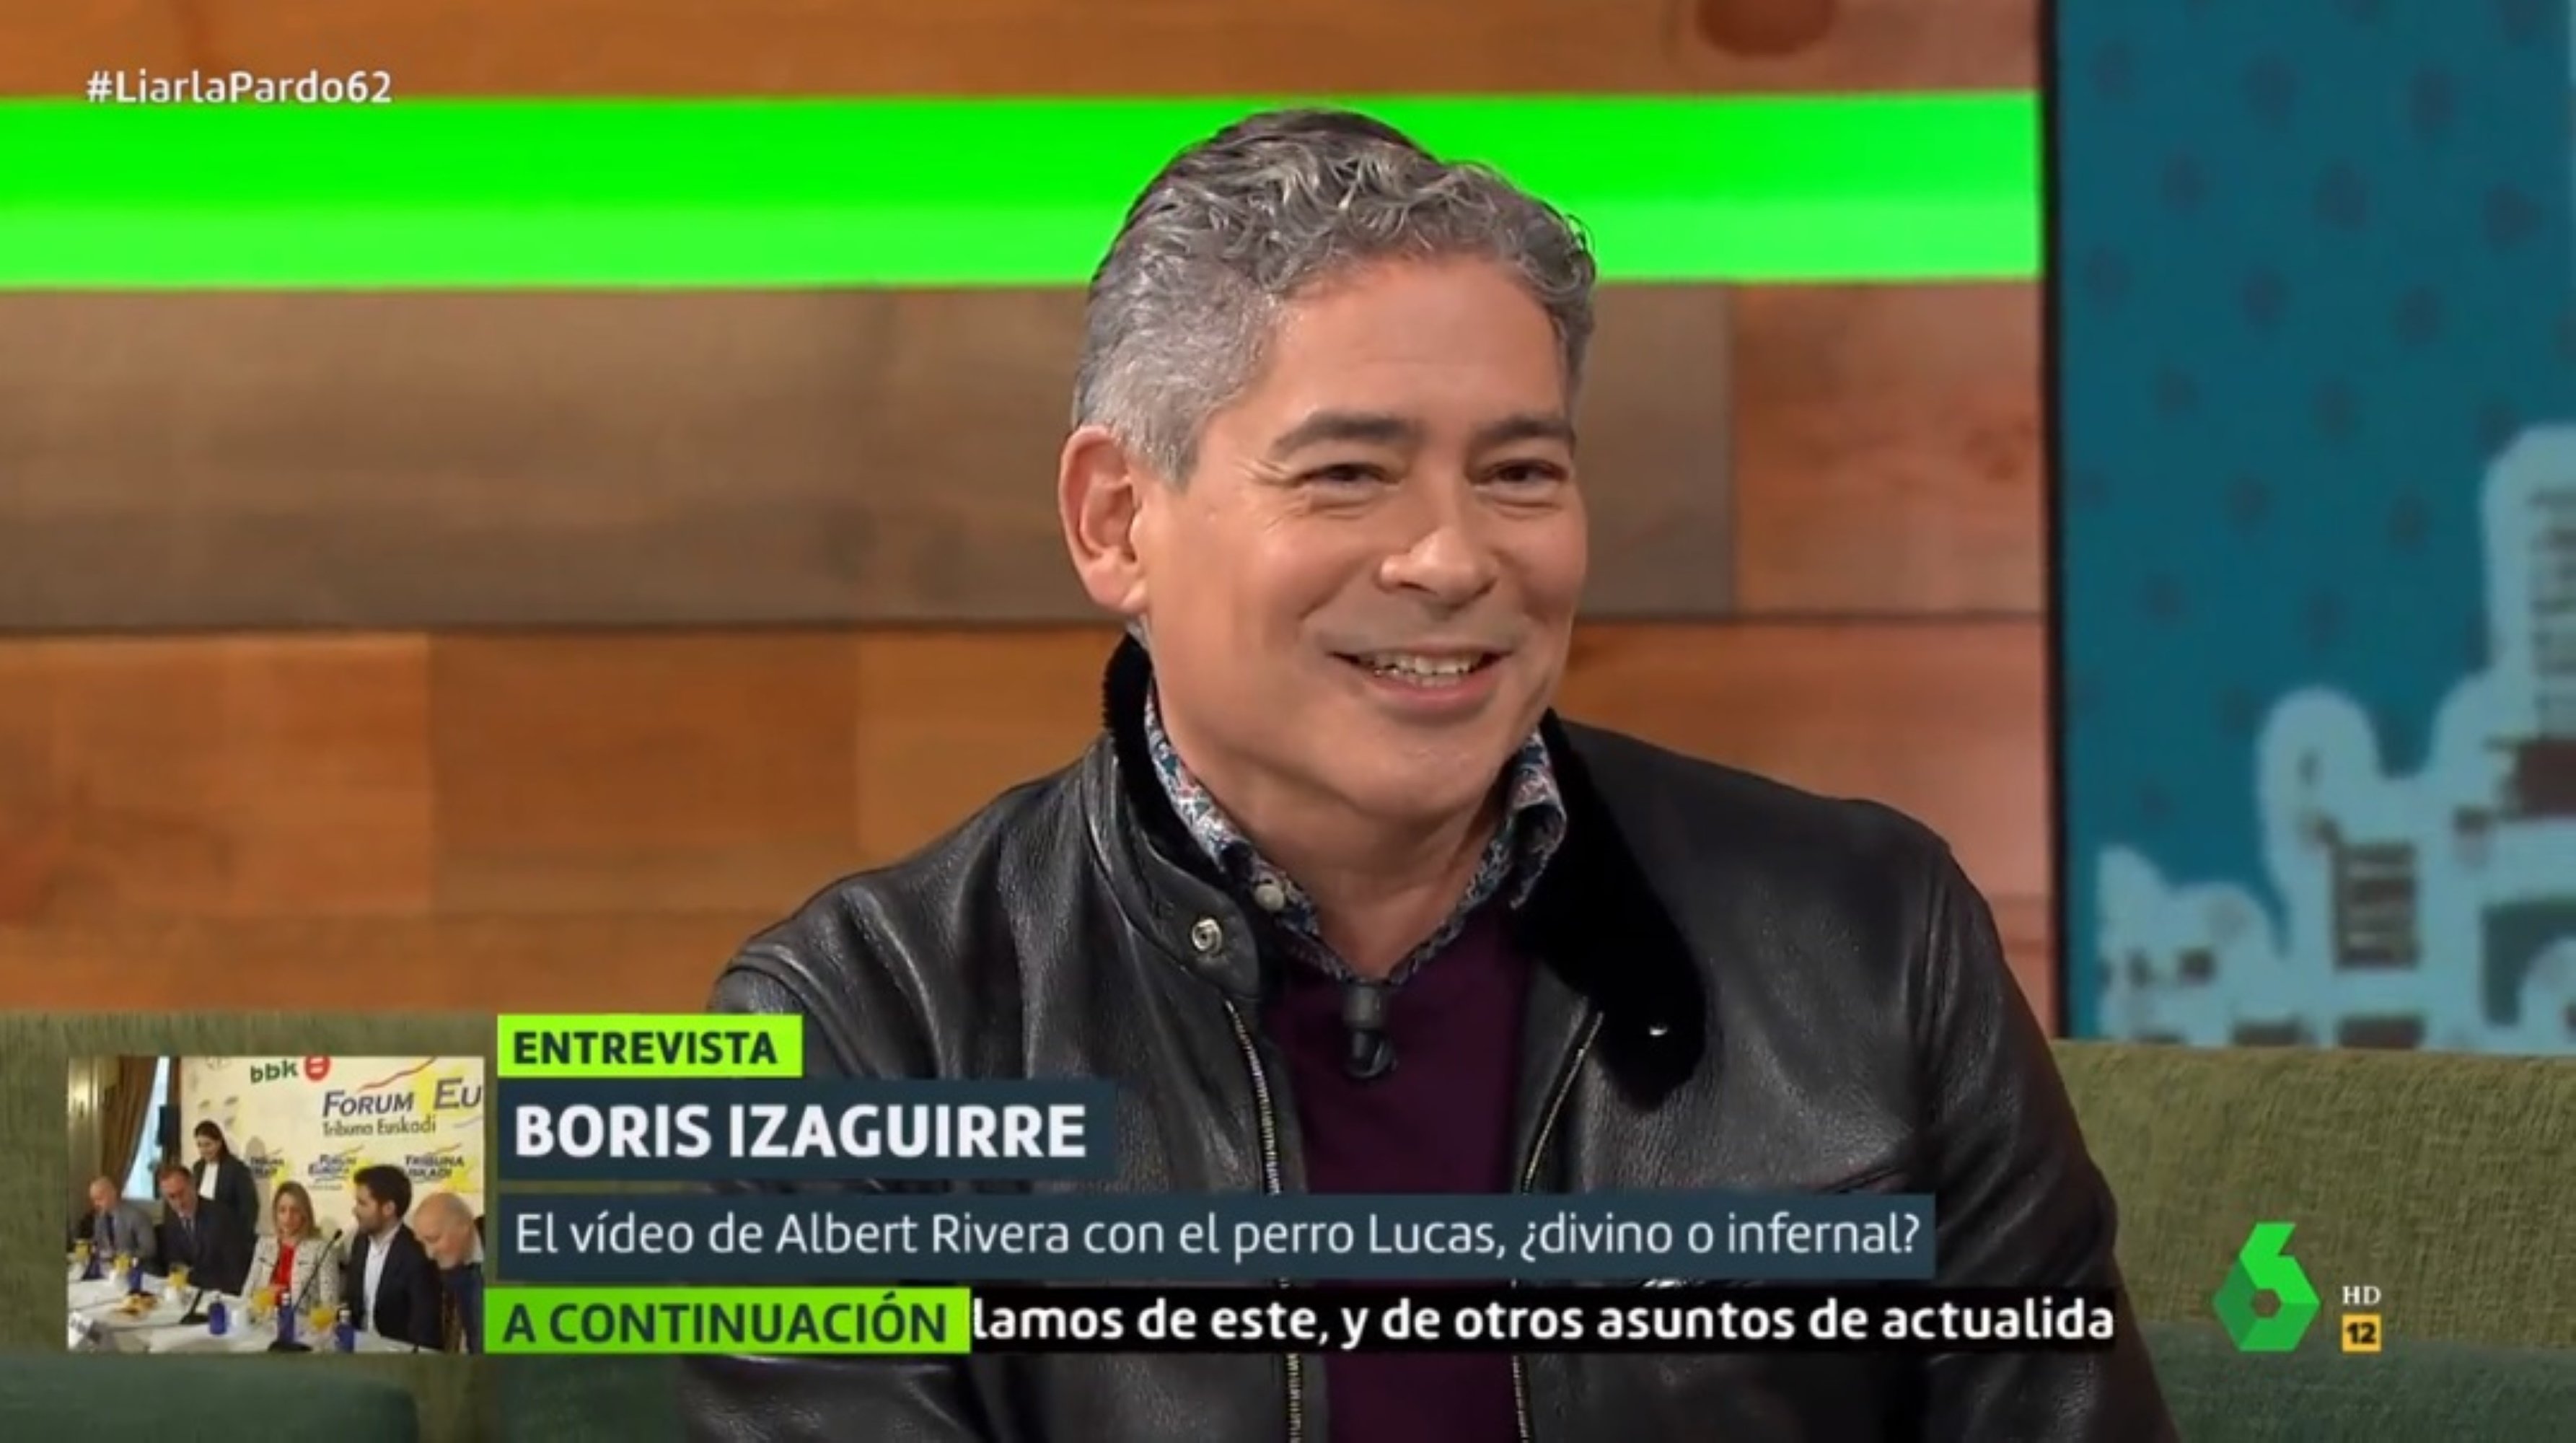 Boris Izaguirre i l’ex de Malú enfonsen Rivera a La Sexta: “Él solo quería ser famoso”